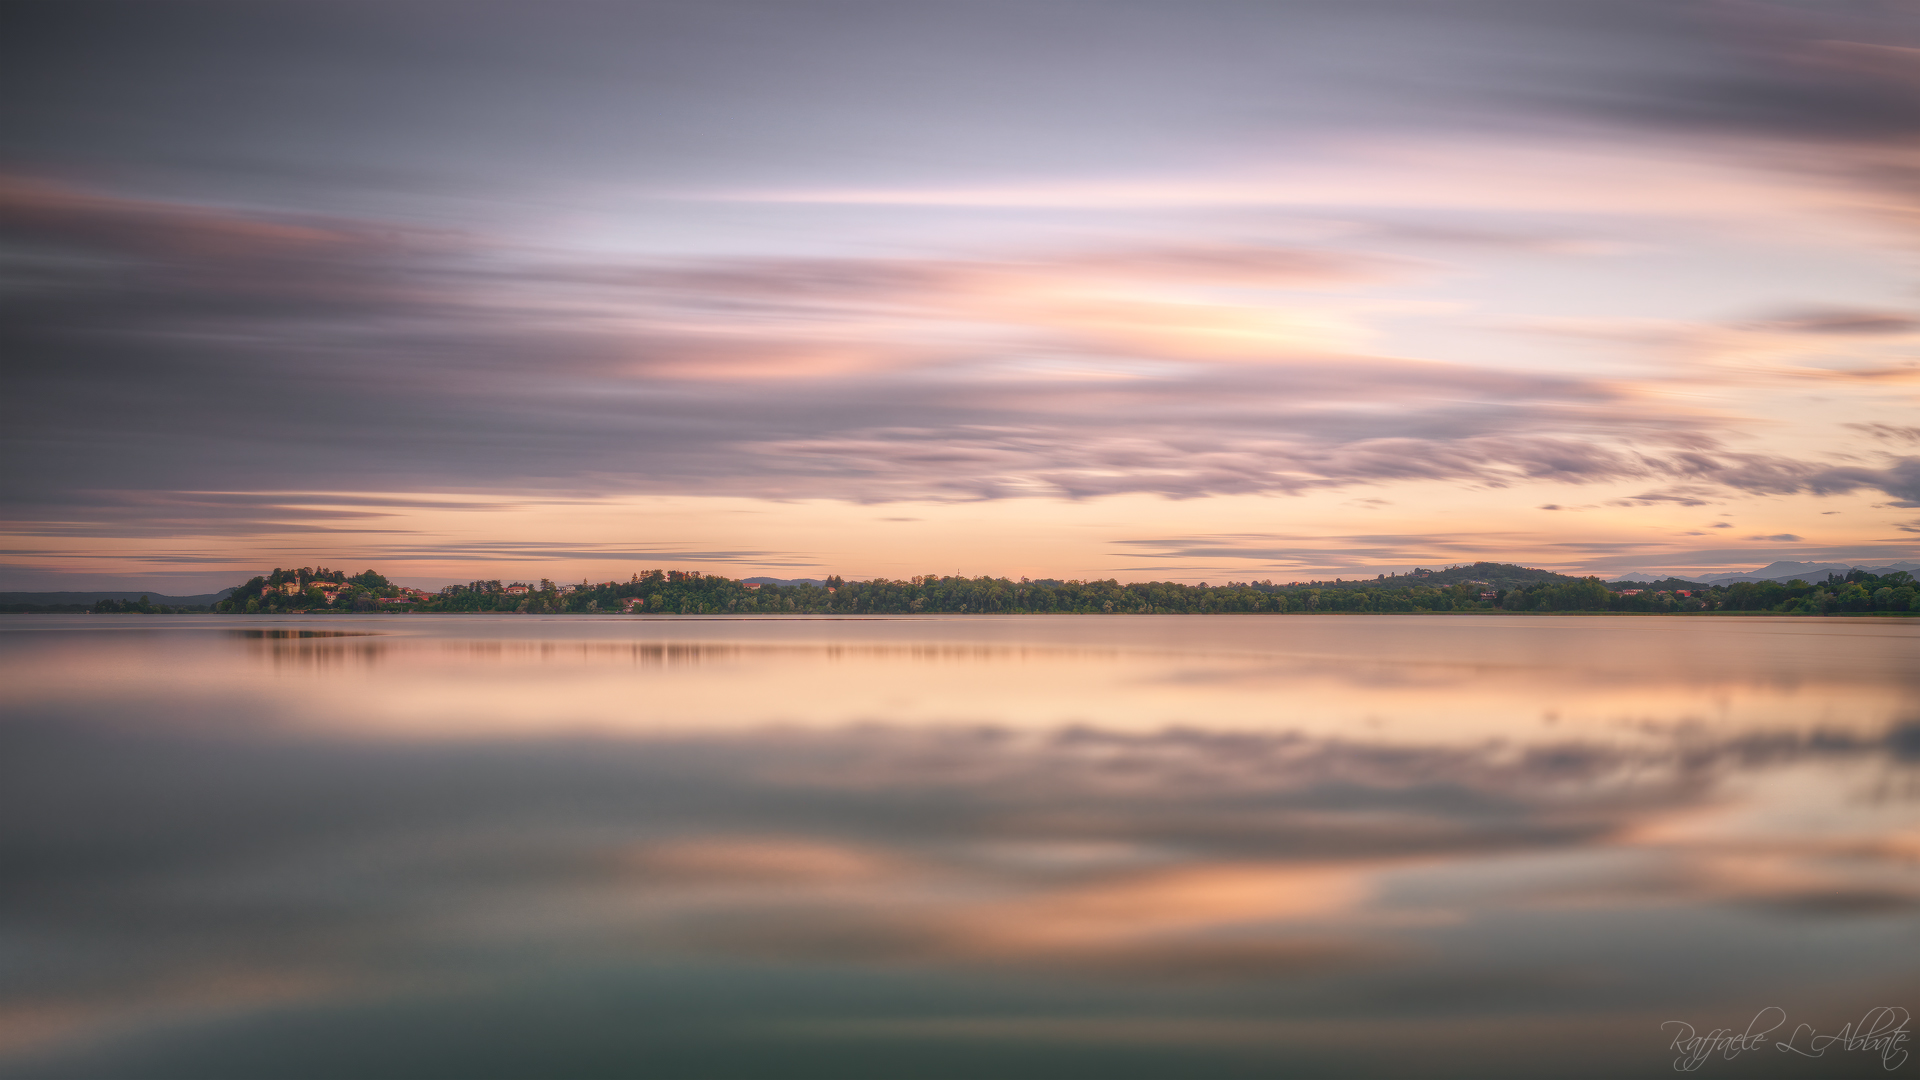 Sunrise at Lake Varese ...